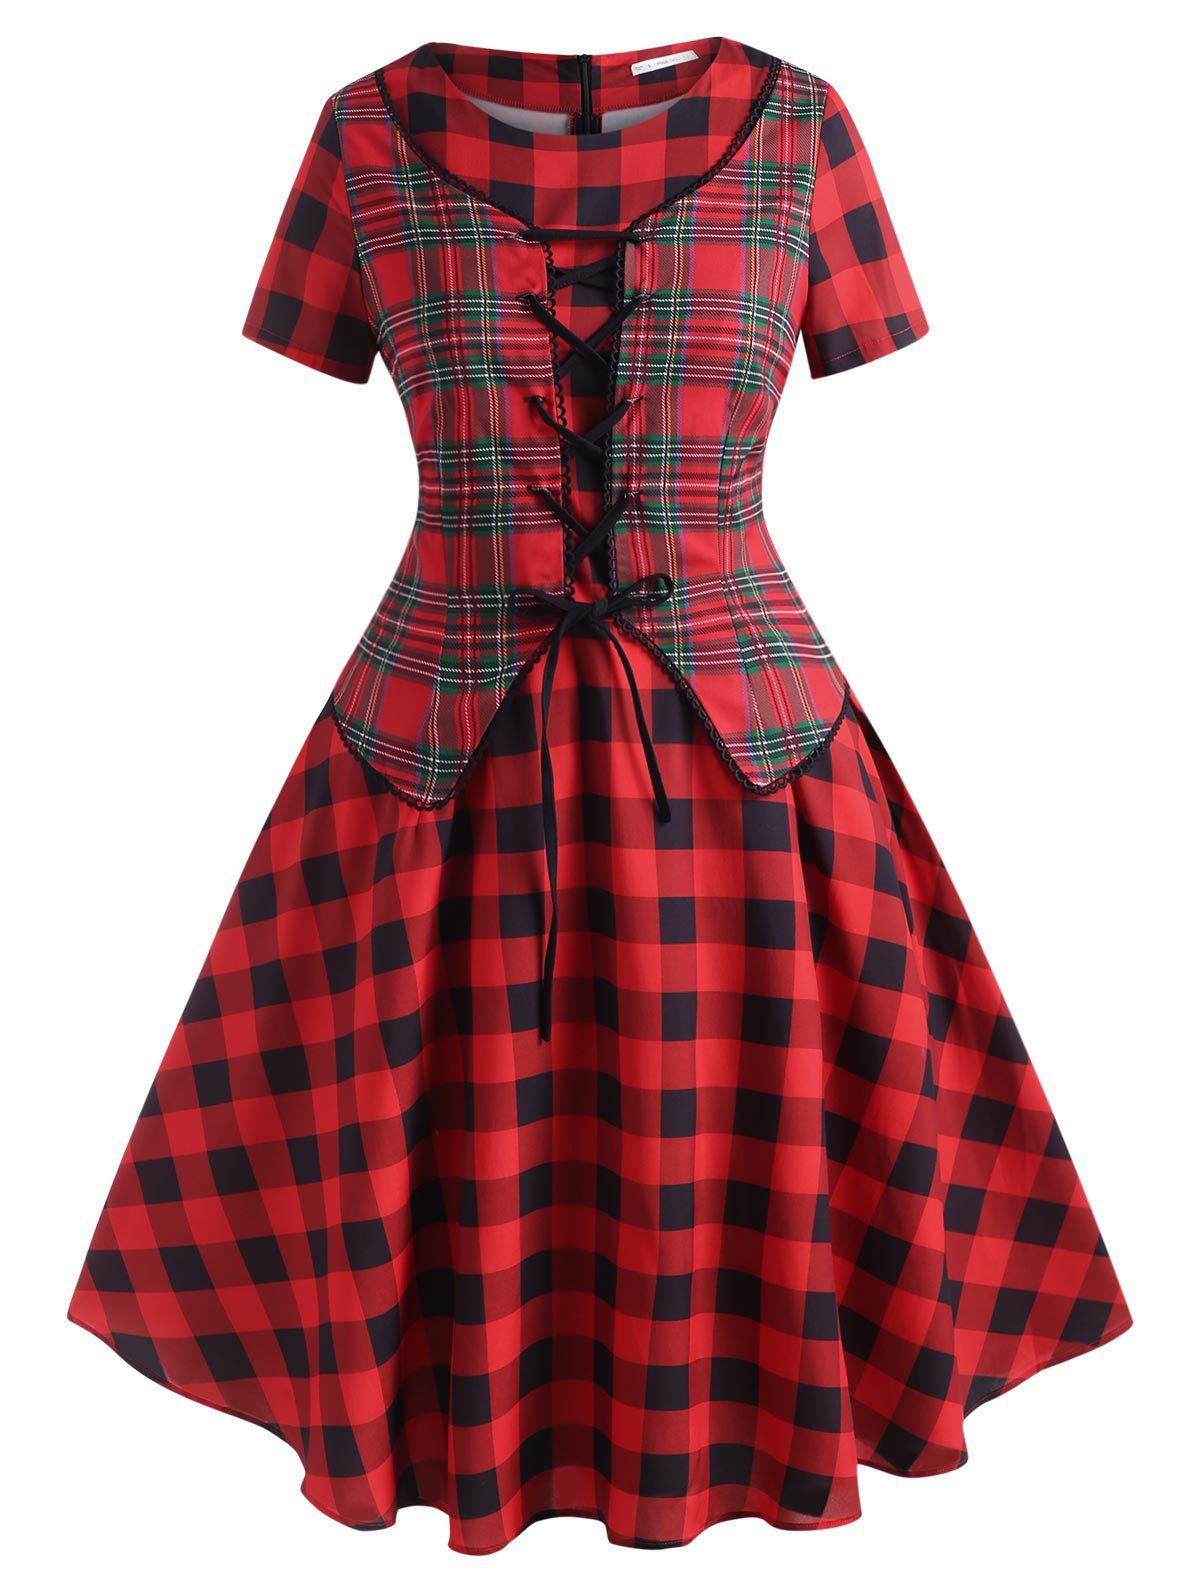 Plaid Lace Up Vest Plus Size Vintage Dress - RED 1X